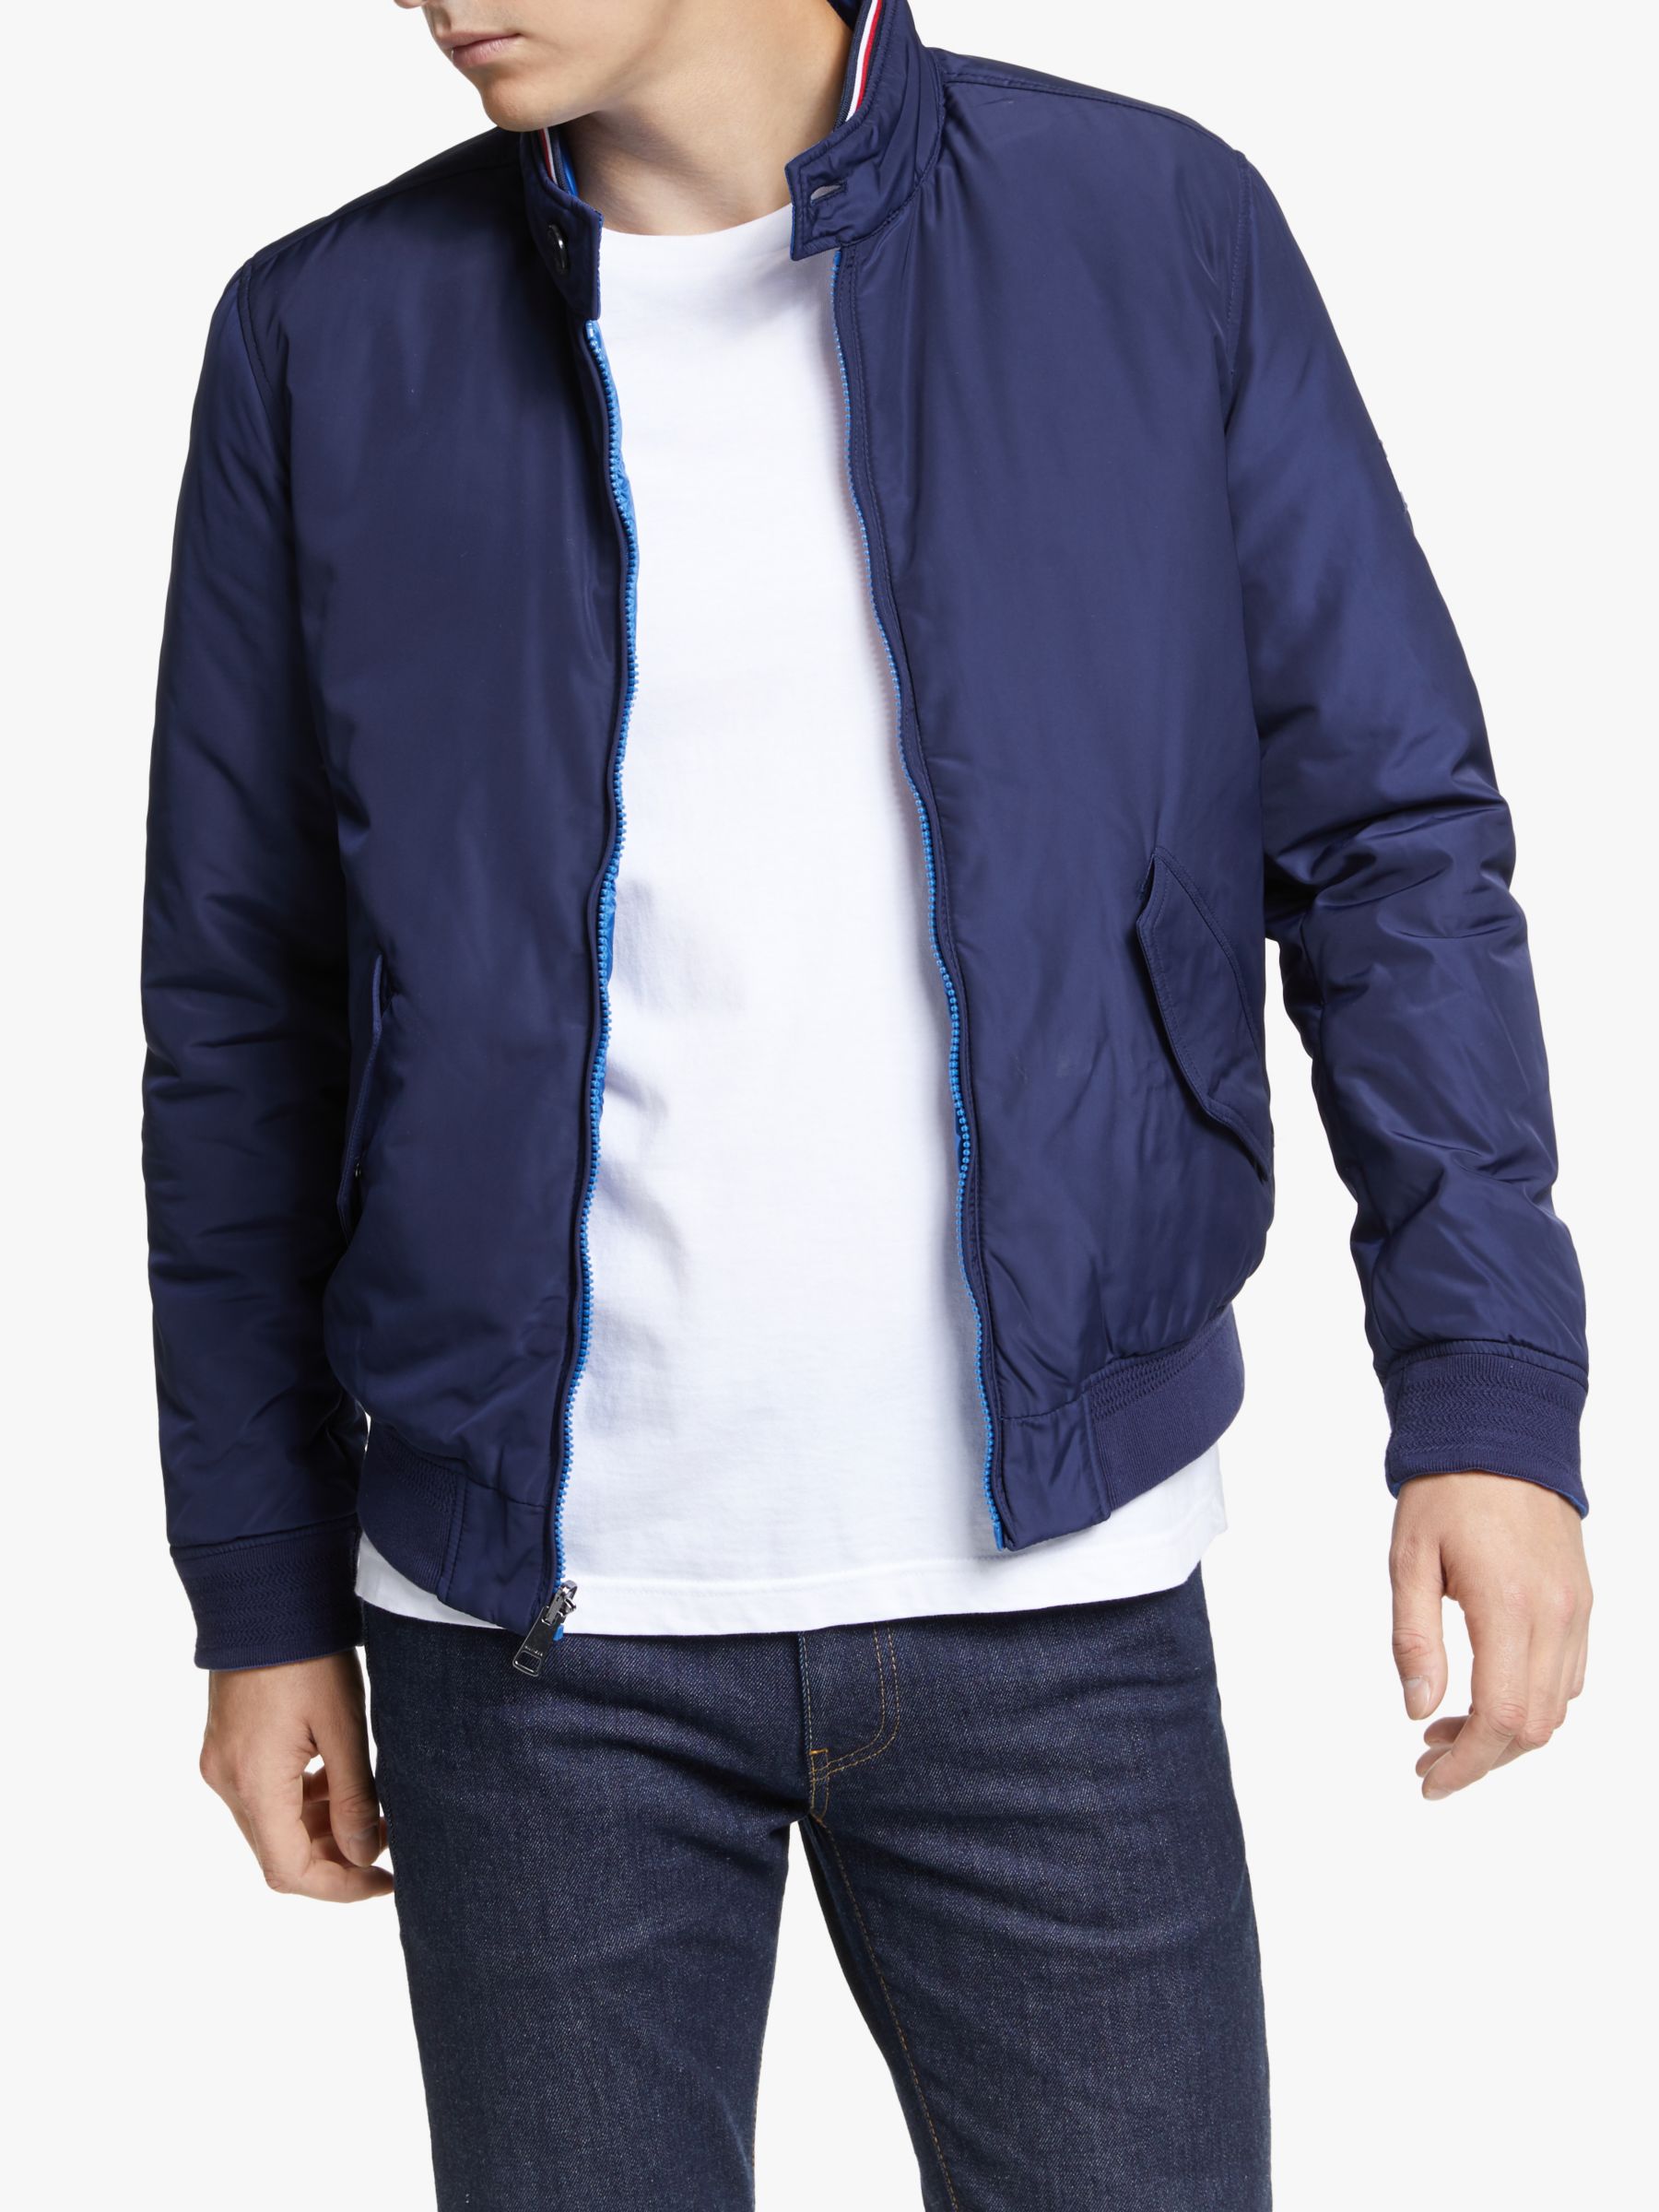 hilfiger jacket blue